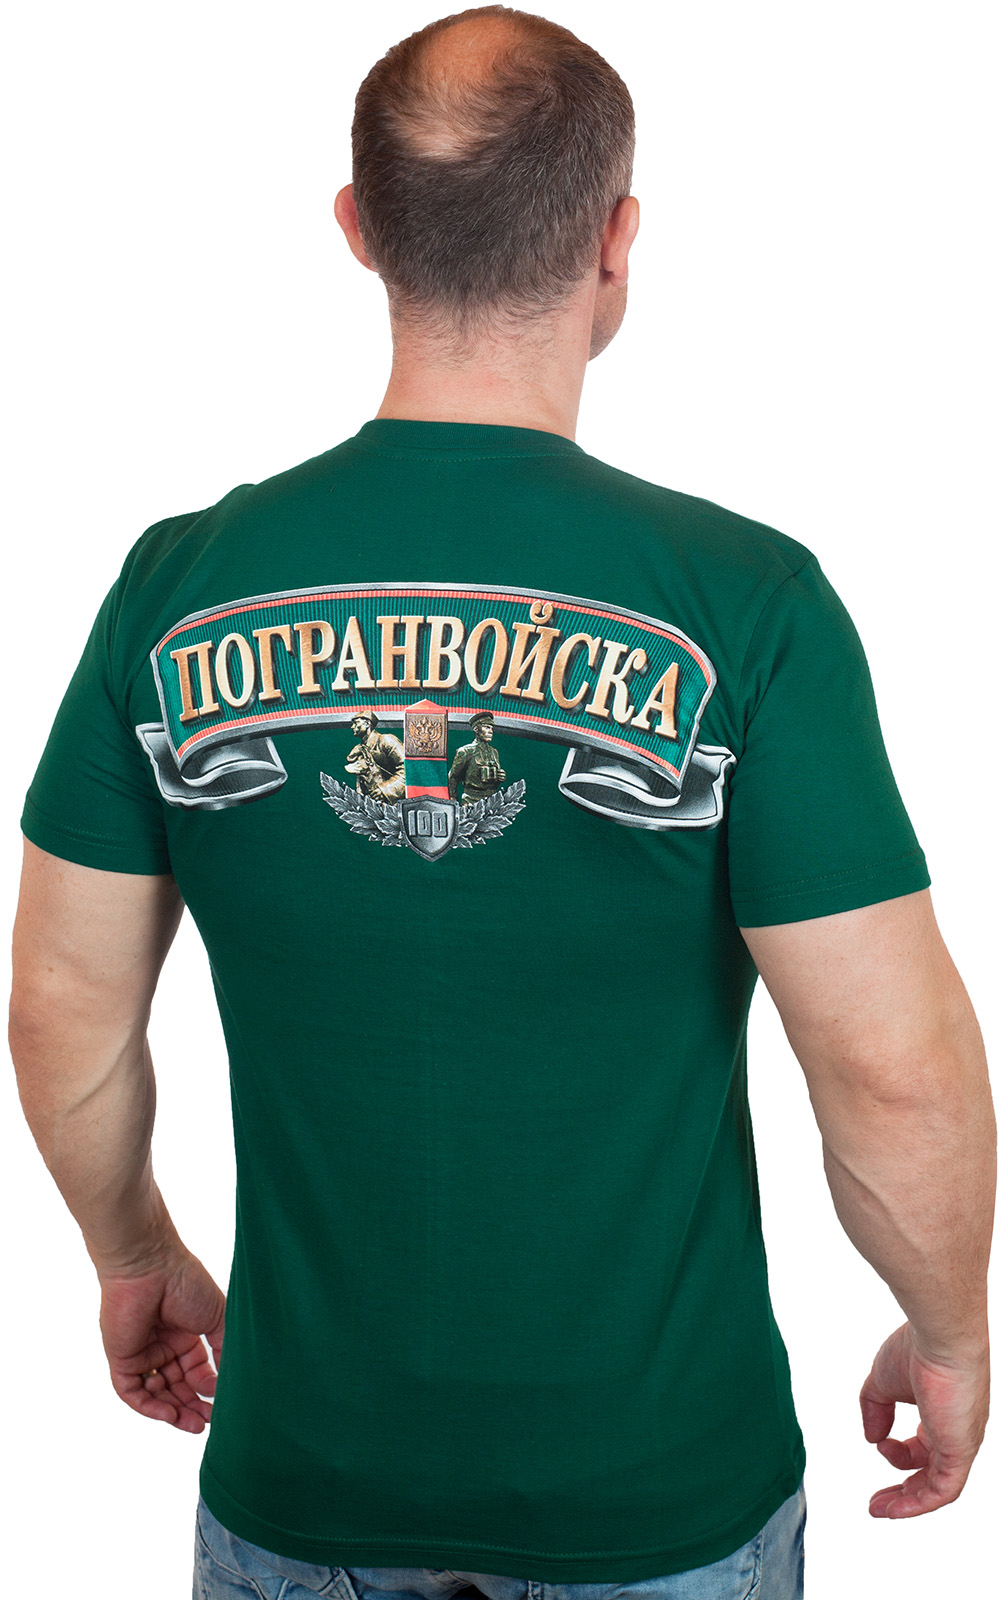 Мужская футболка для служащих Погранвойск. 